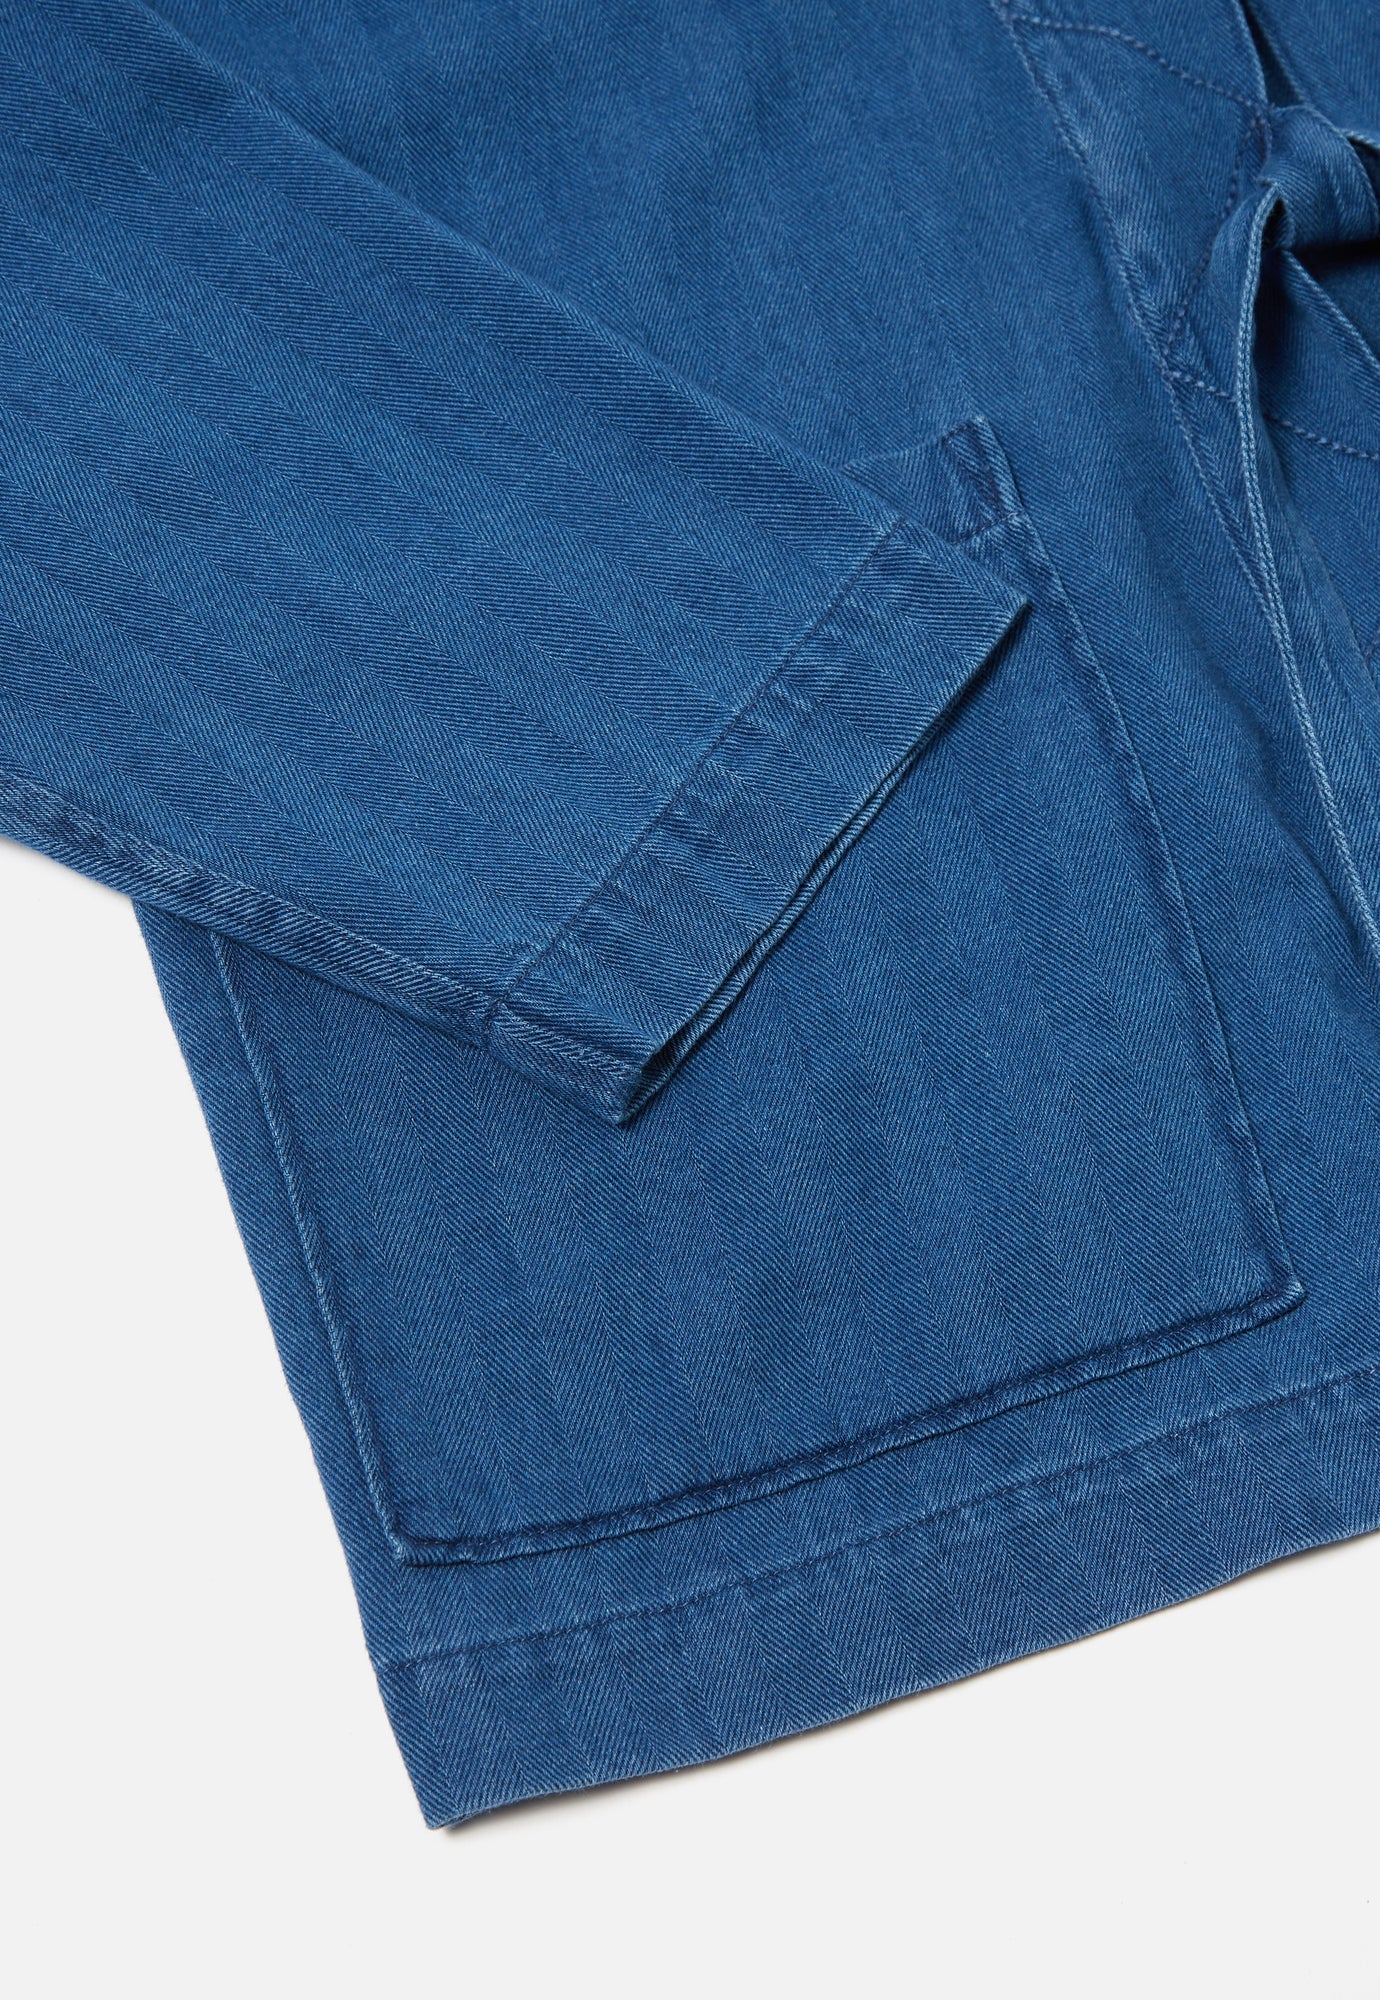 Universal works Herringbone denim front tie jacket | Washed Indigo LEO BOUTIQUE